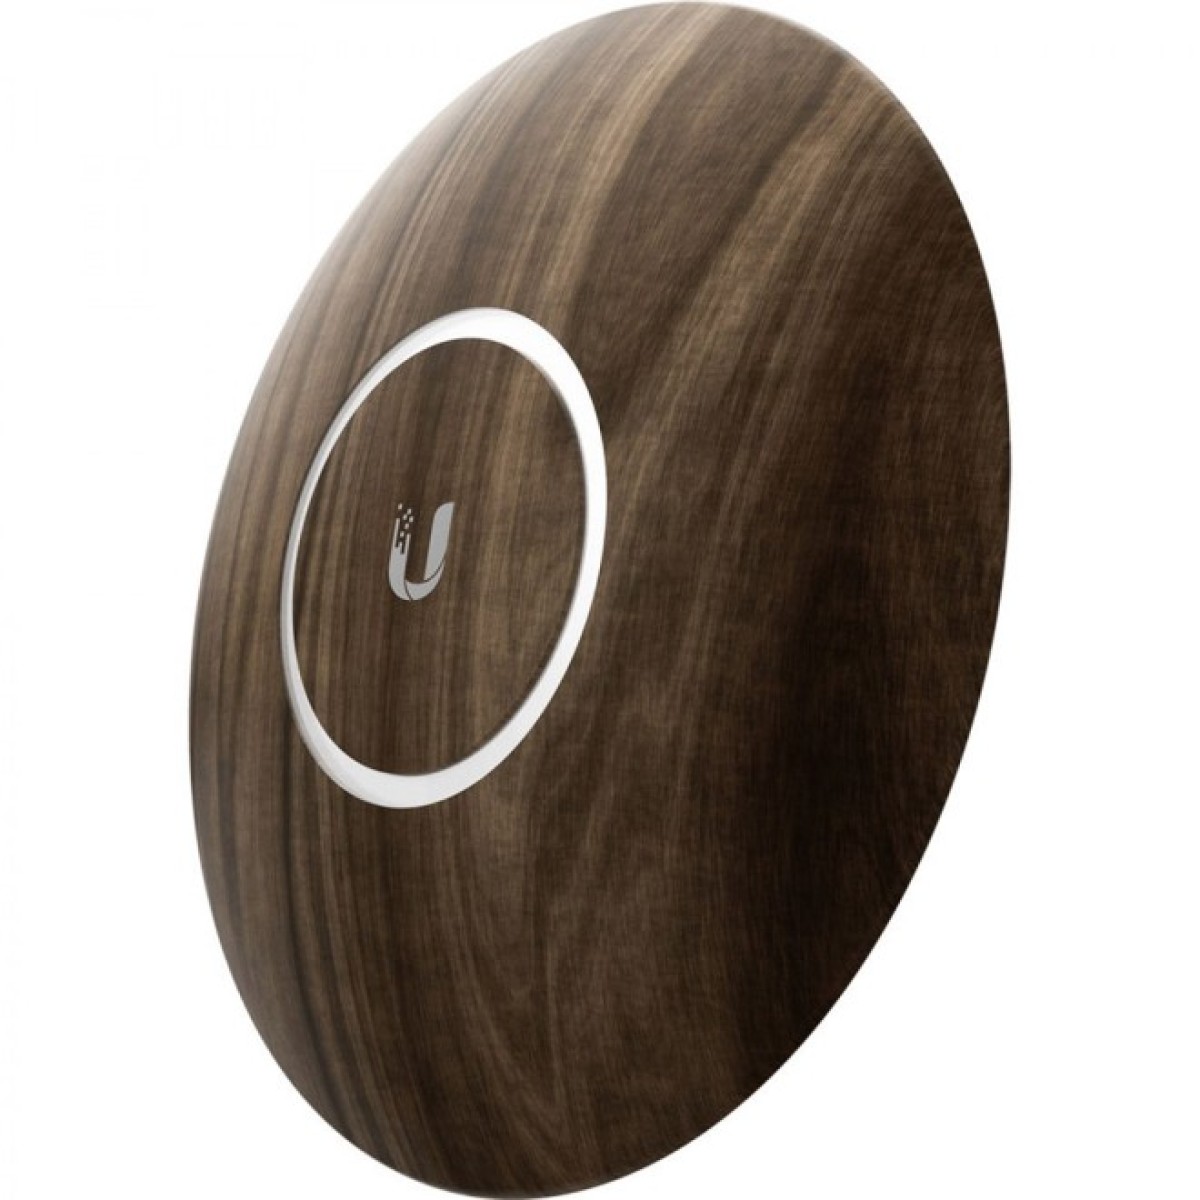 Декоративна накладка на точку доступу Ubiquiti UniFi AP nanoHD Wood Design (nHD-cover-Wood) 98_98.jpg - фото 3